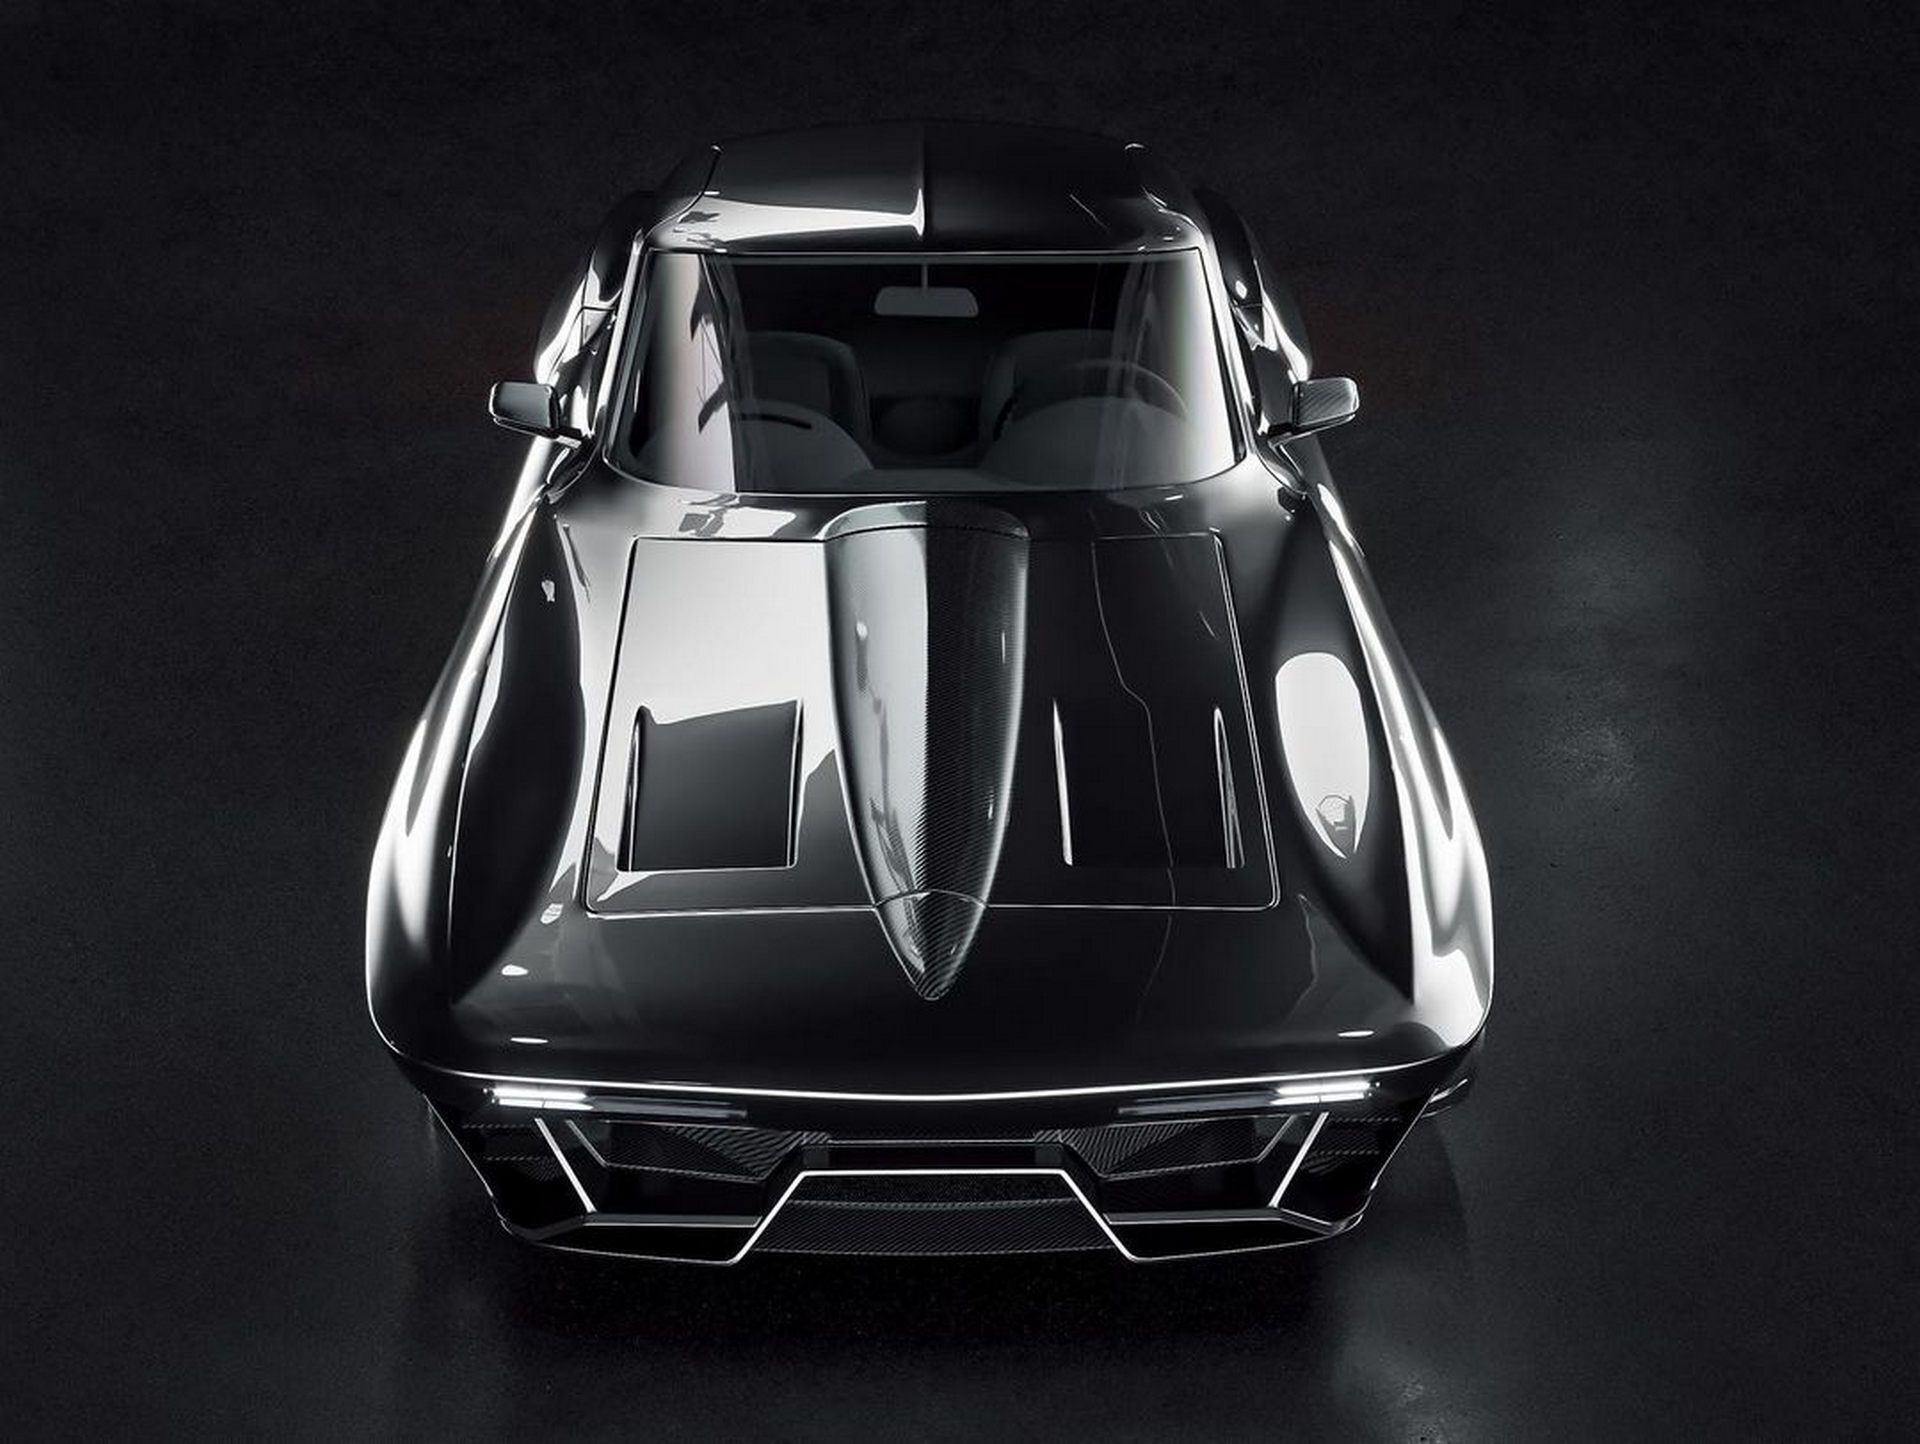 За основу для создания новинки был выбран один из культовых американских спорткаров – Chevrolet Corvette С2 с кузовом купе